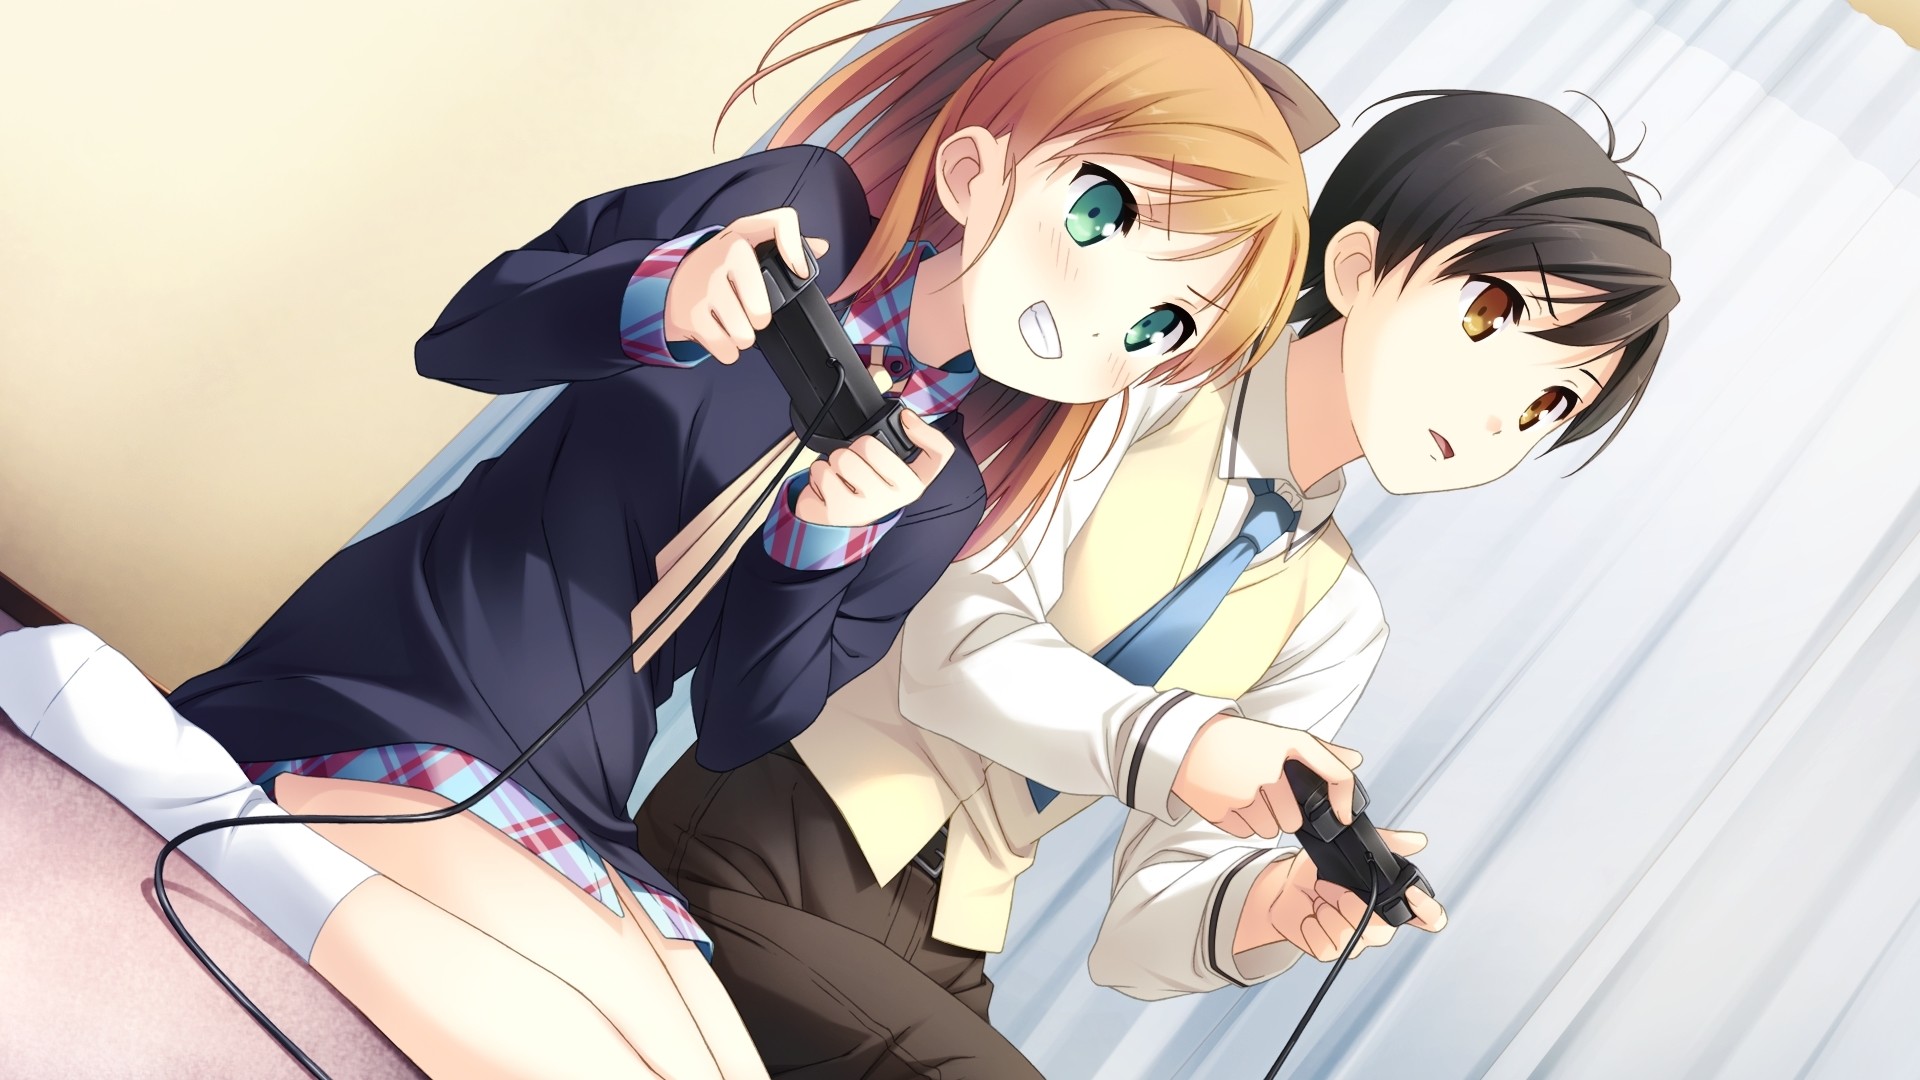 flirting games anime girls 2 girl movie